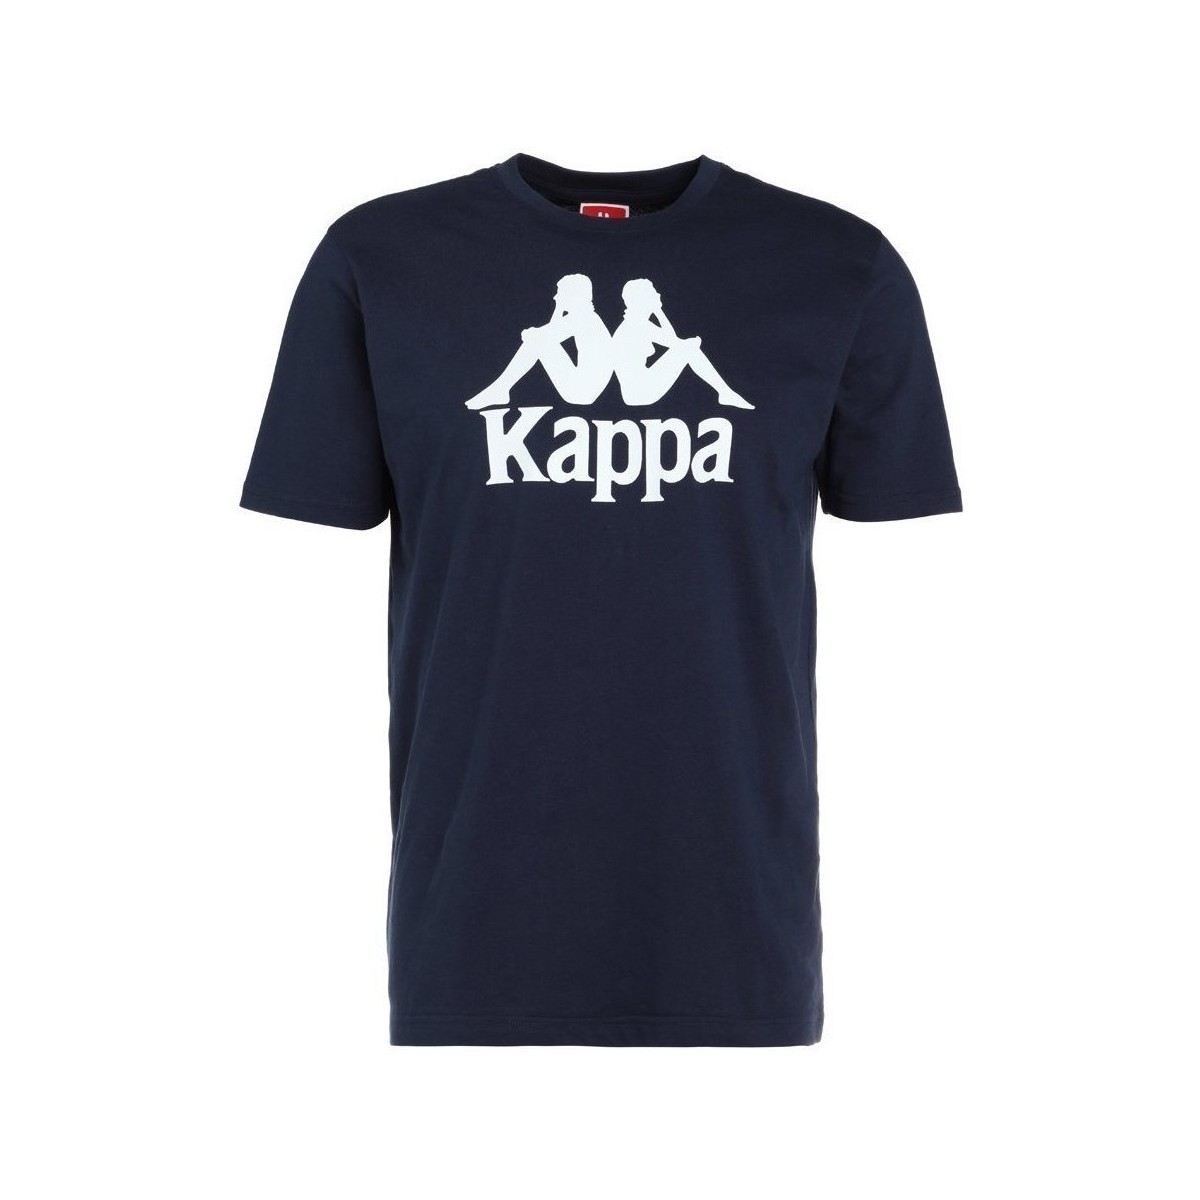 Textil Chlapecké Trička s krátkým rukávem Kappa Caspar Tshirt Černá